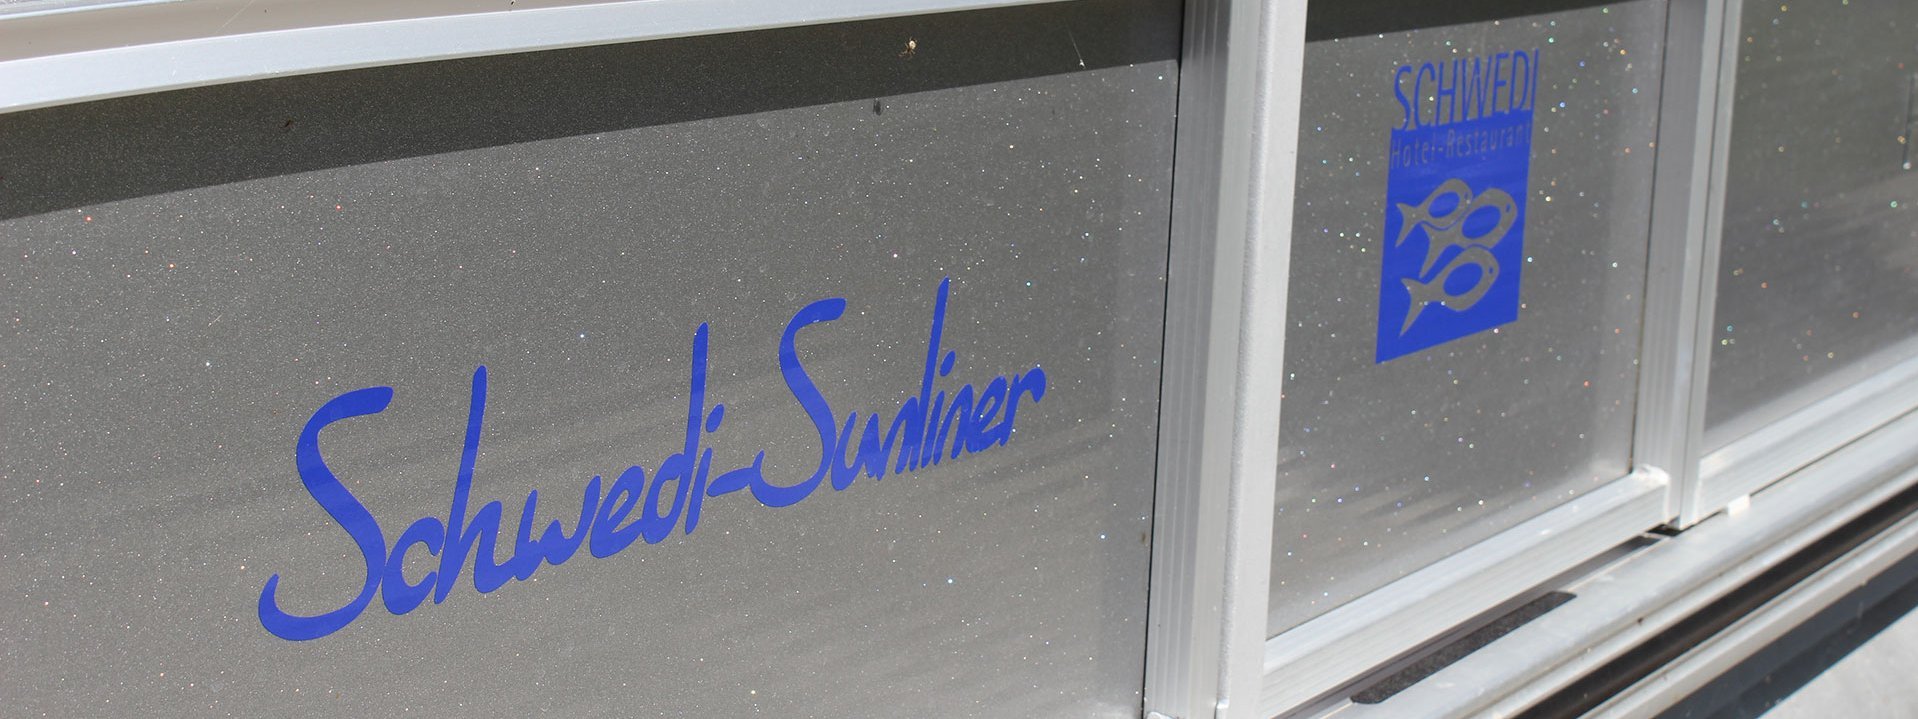 Auf dem Bild sind Fenster zu sehen, auf denen der Schriftzug "Schwedi-Sunliner" und das Logo des Hotel Schwedi zu sehen sind.